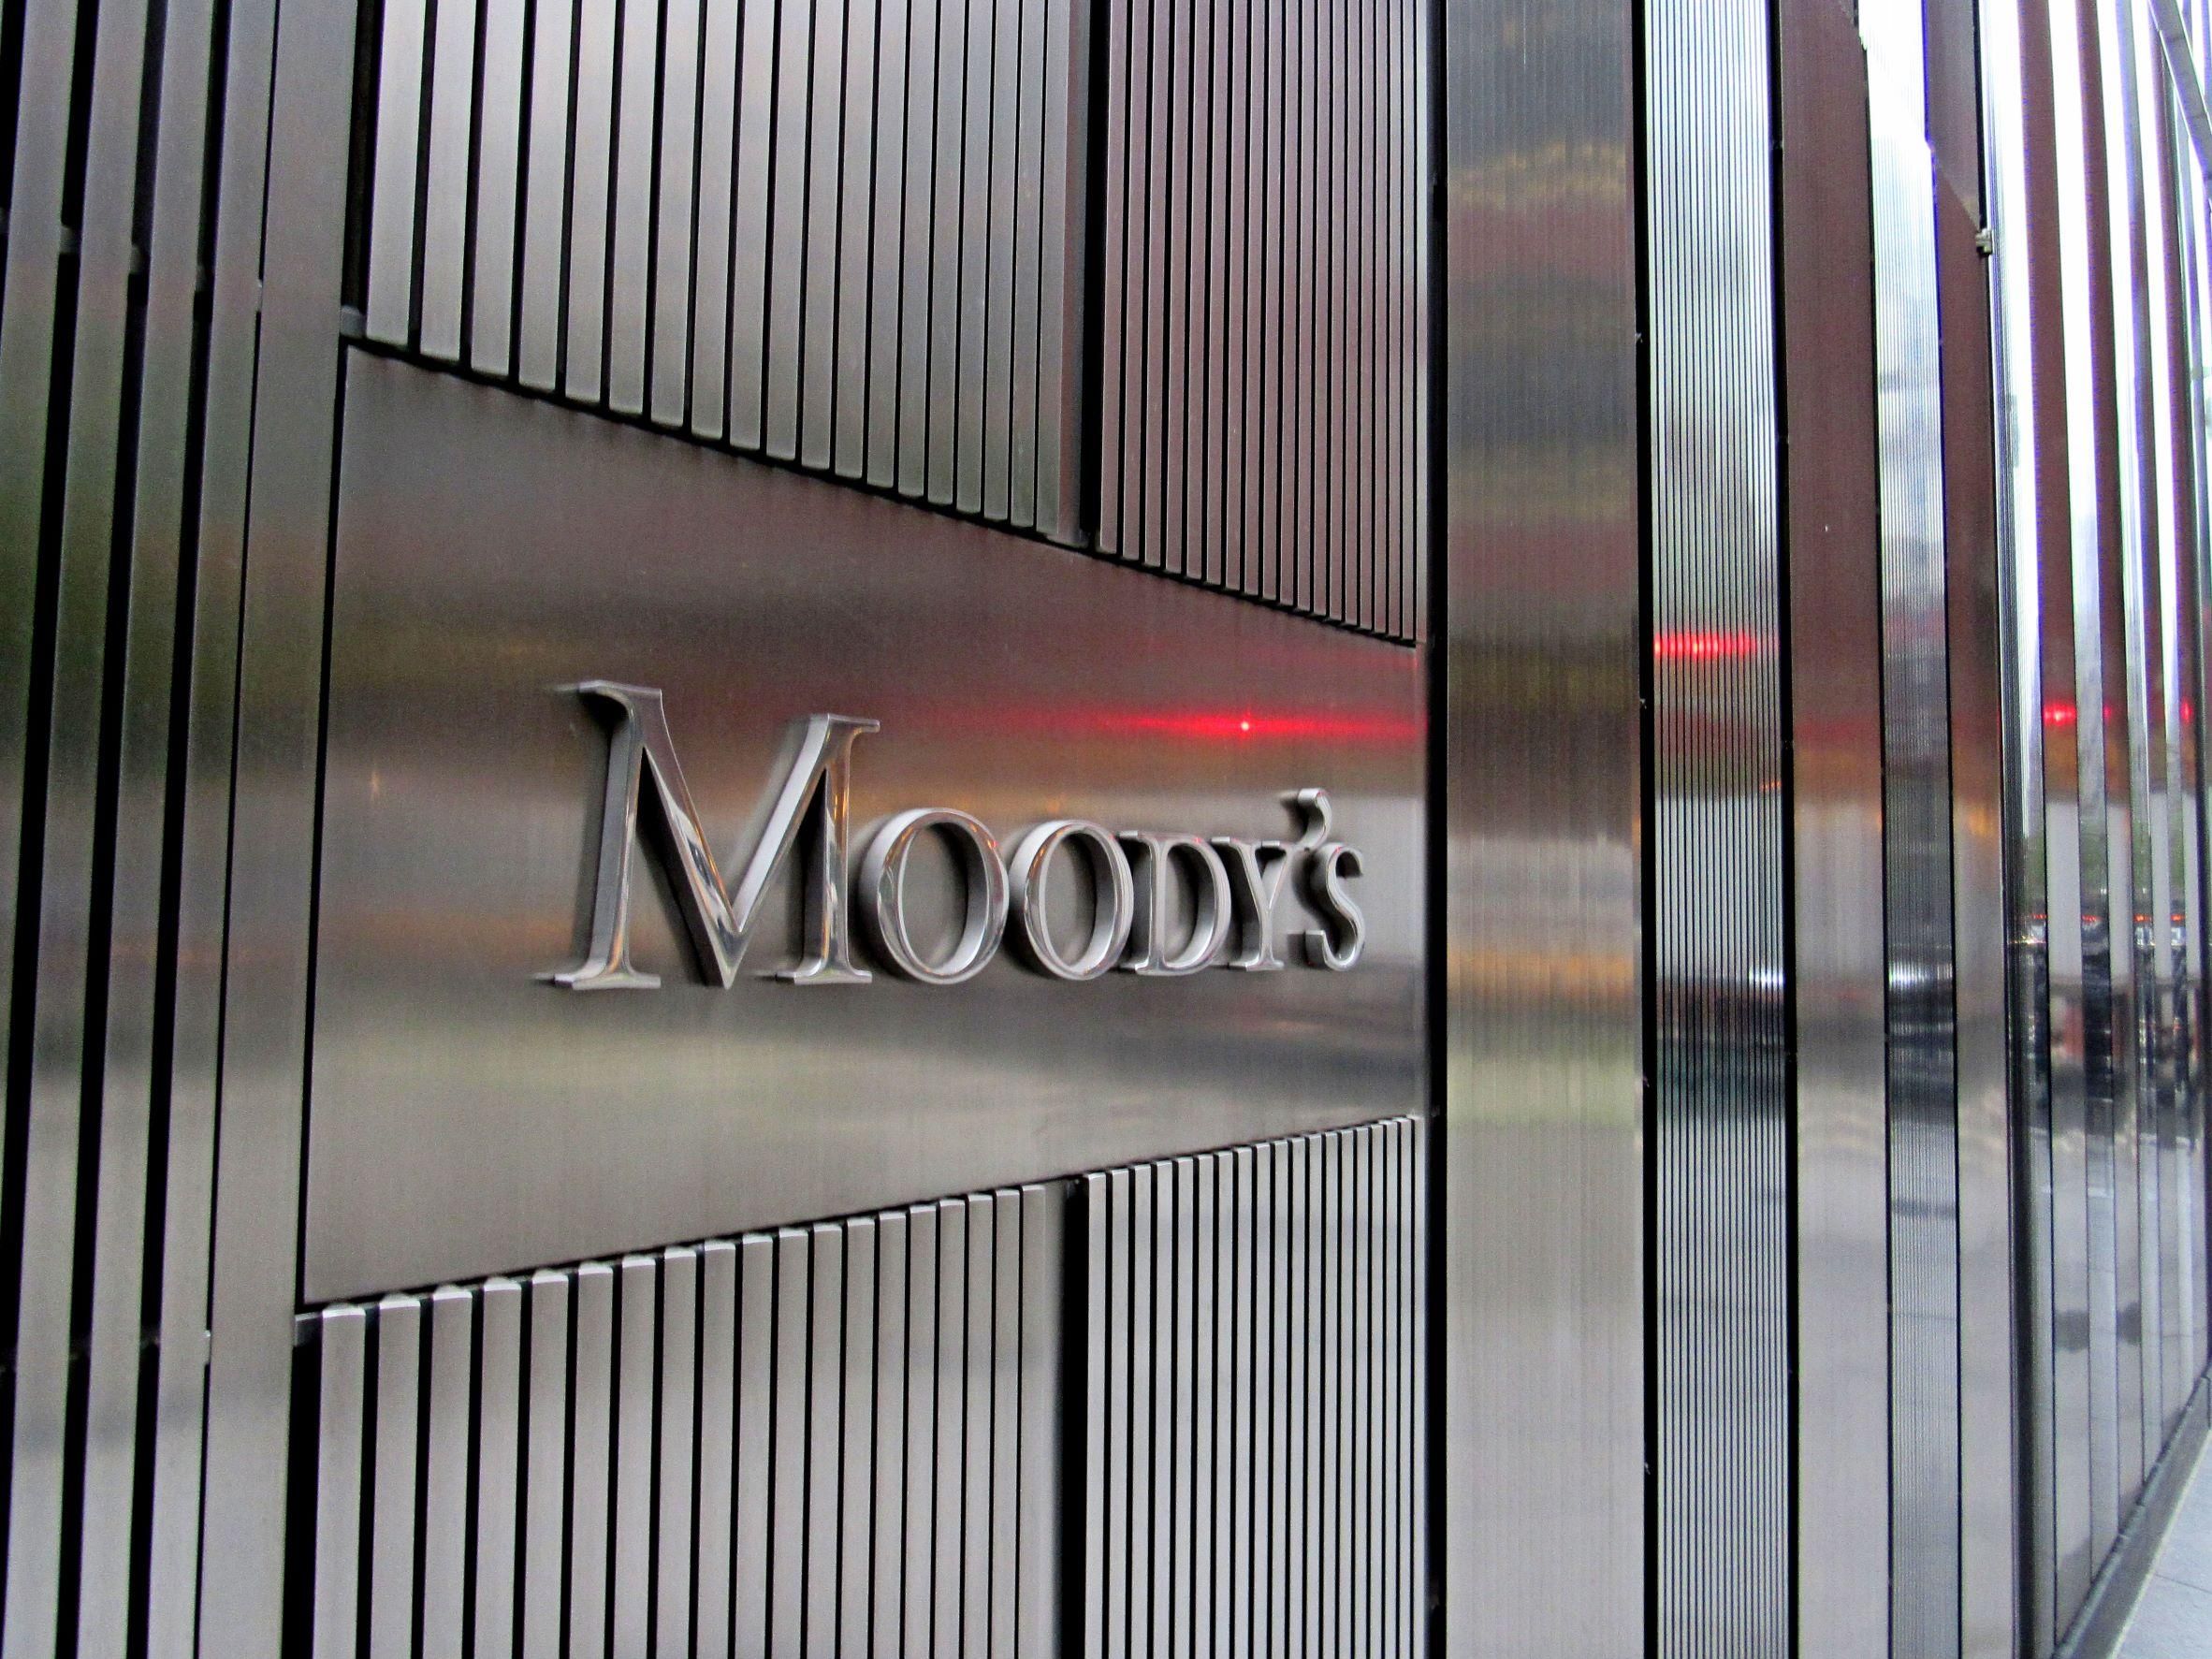 A közép-kelet európai régió gazdasági kilátásait elemezte a Moody's hitelminősítő